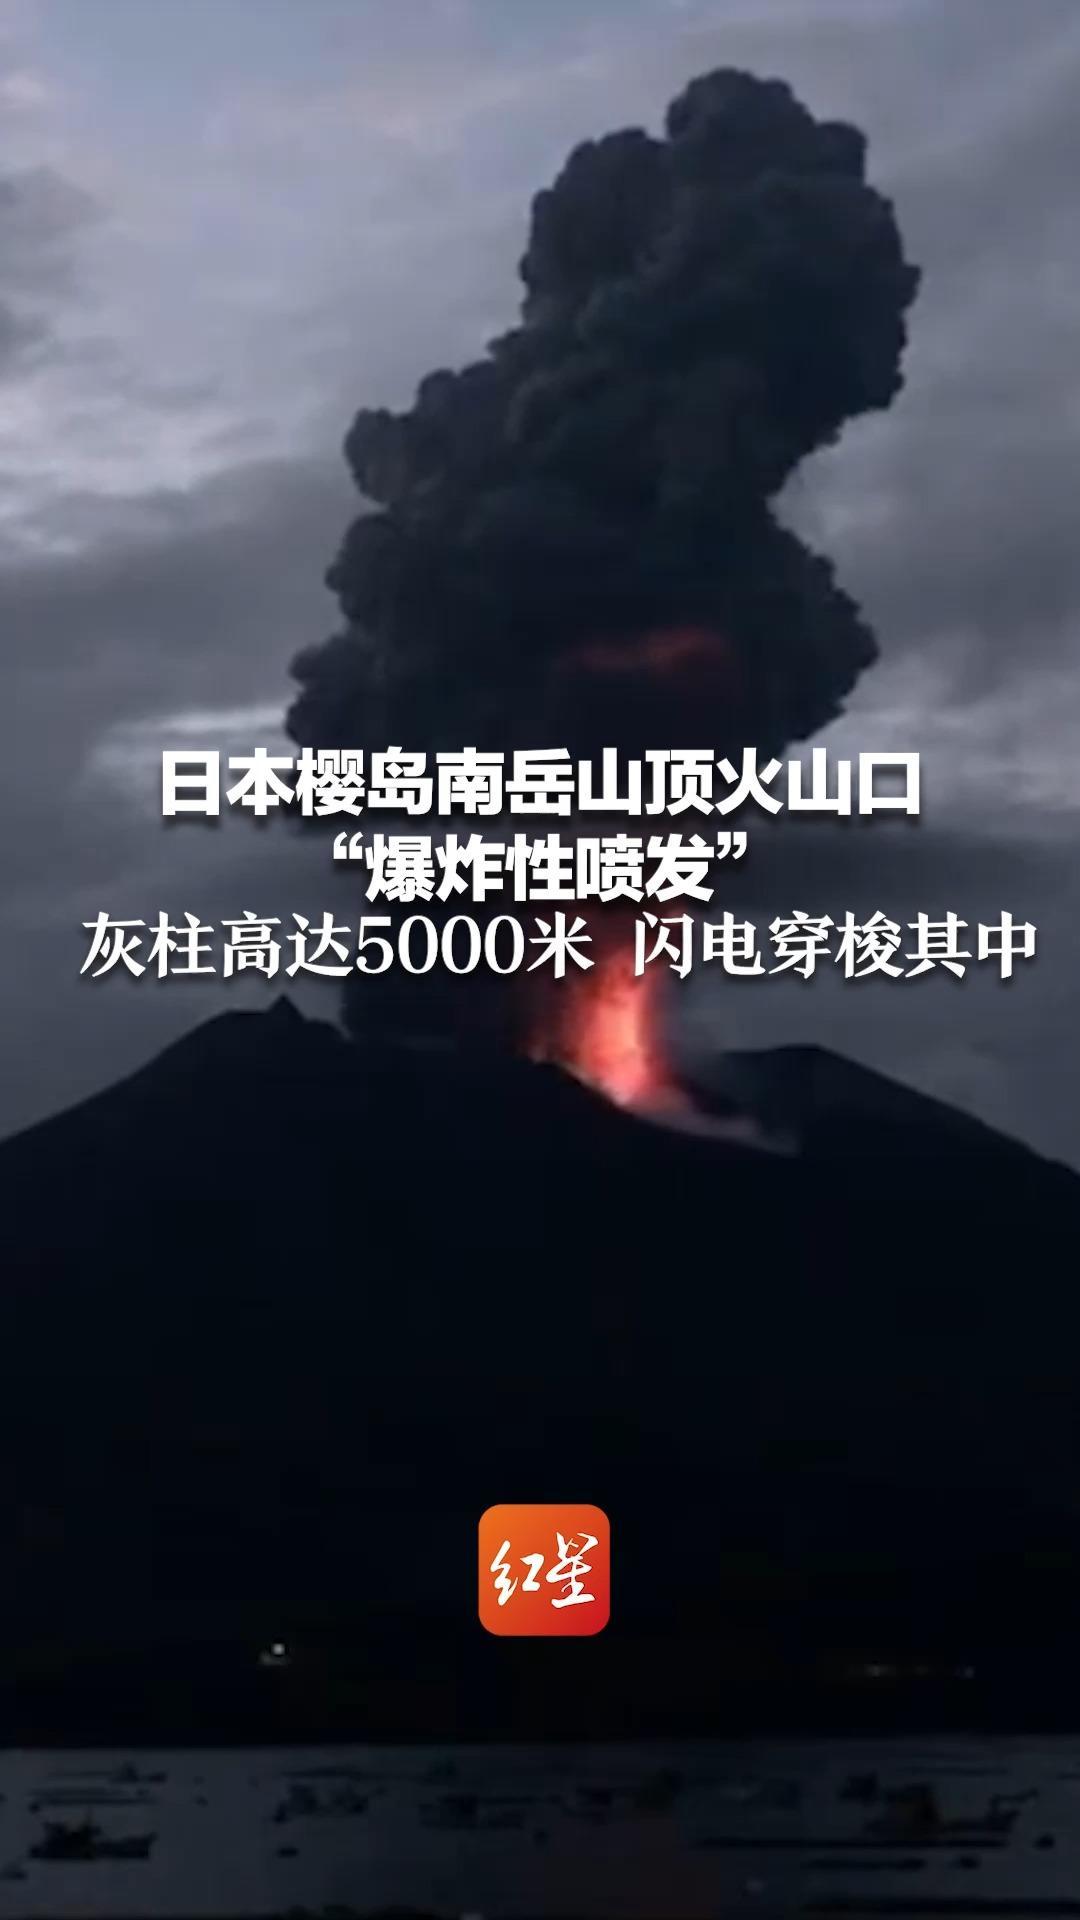 日本樱岛南岳山顶火山口爆炸性喷发灰柱高达5000米闪电穿梭其中